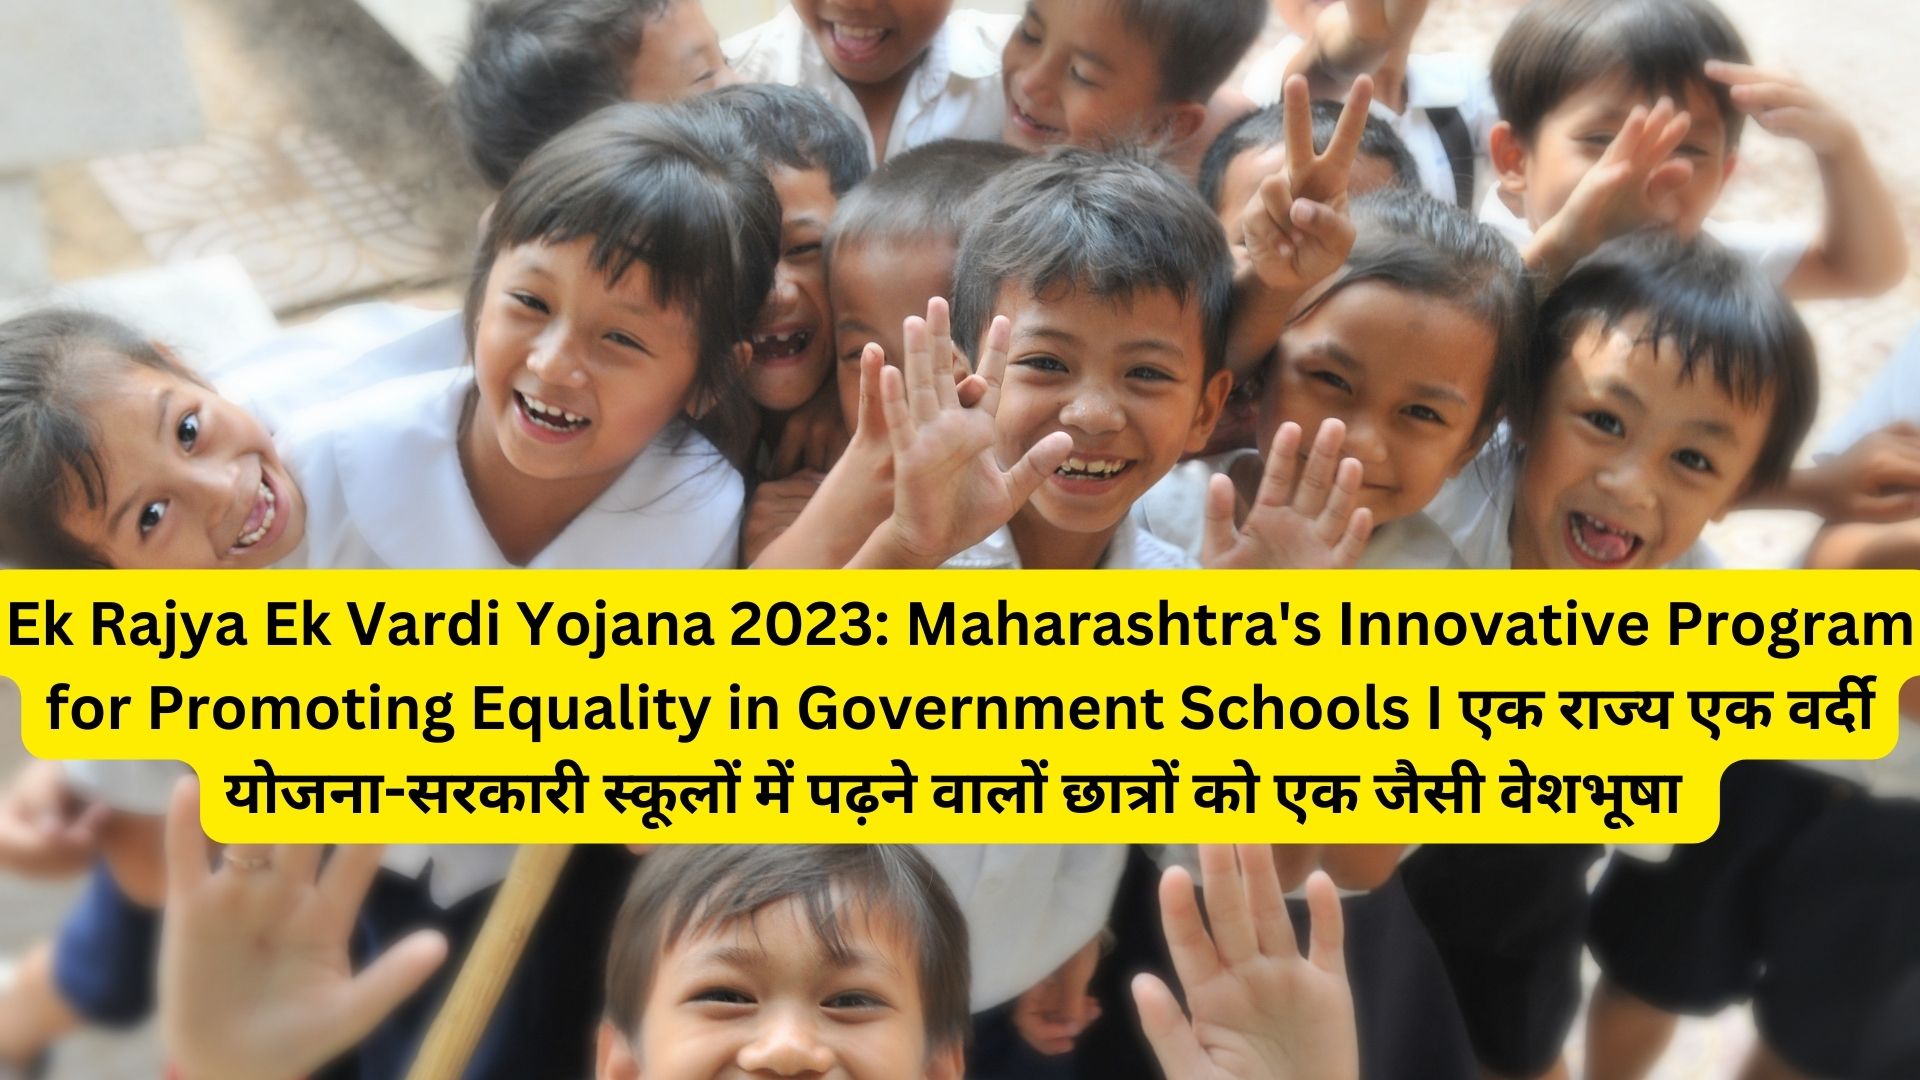 Ek Rajya Ek Vardi Yojana 2023: Maharashtra's Innovative Program for Promoting Equality in Government Schools I एक राज्य एक वर्दी योजना-सरकारी स्कूलों में पढ़ने वालों छात्रों को एक जैसी वेशभूषा